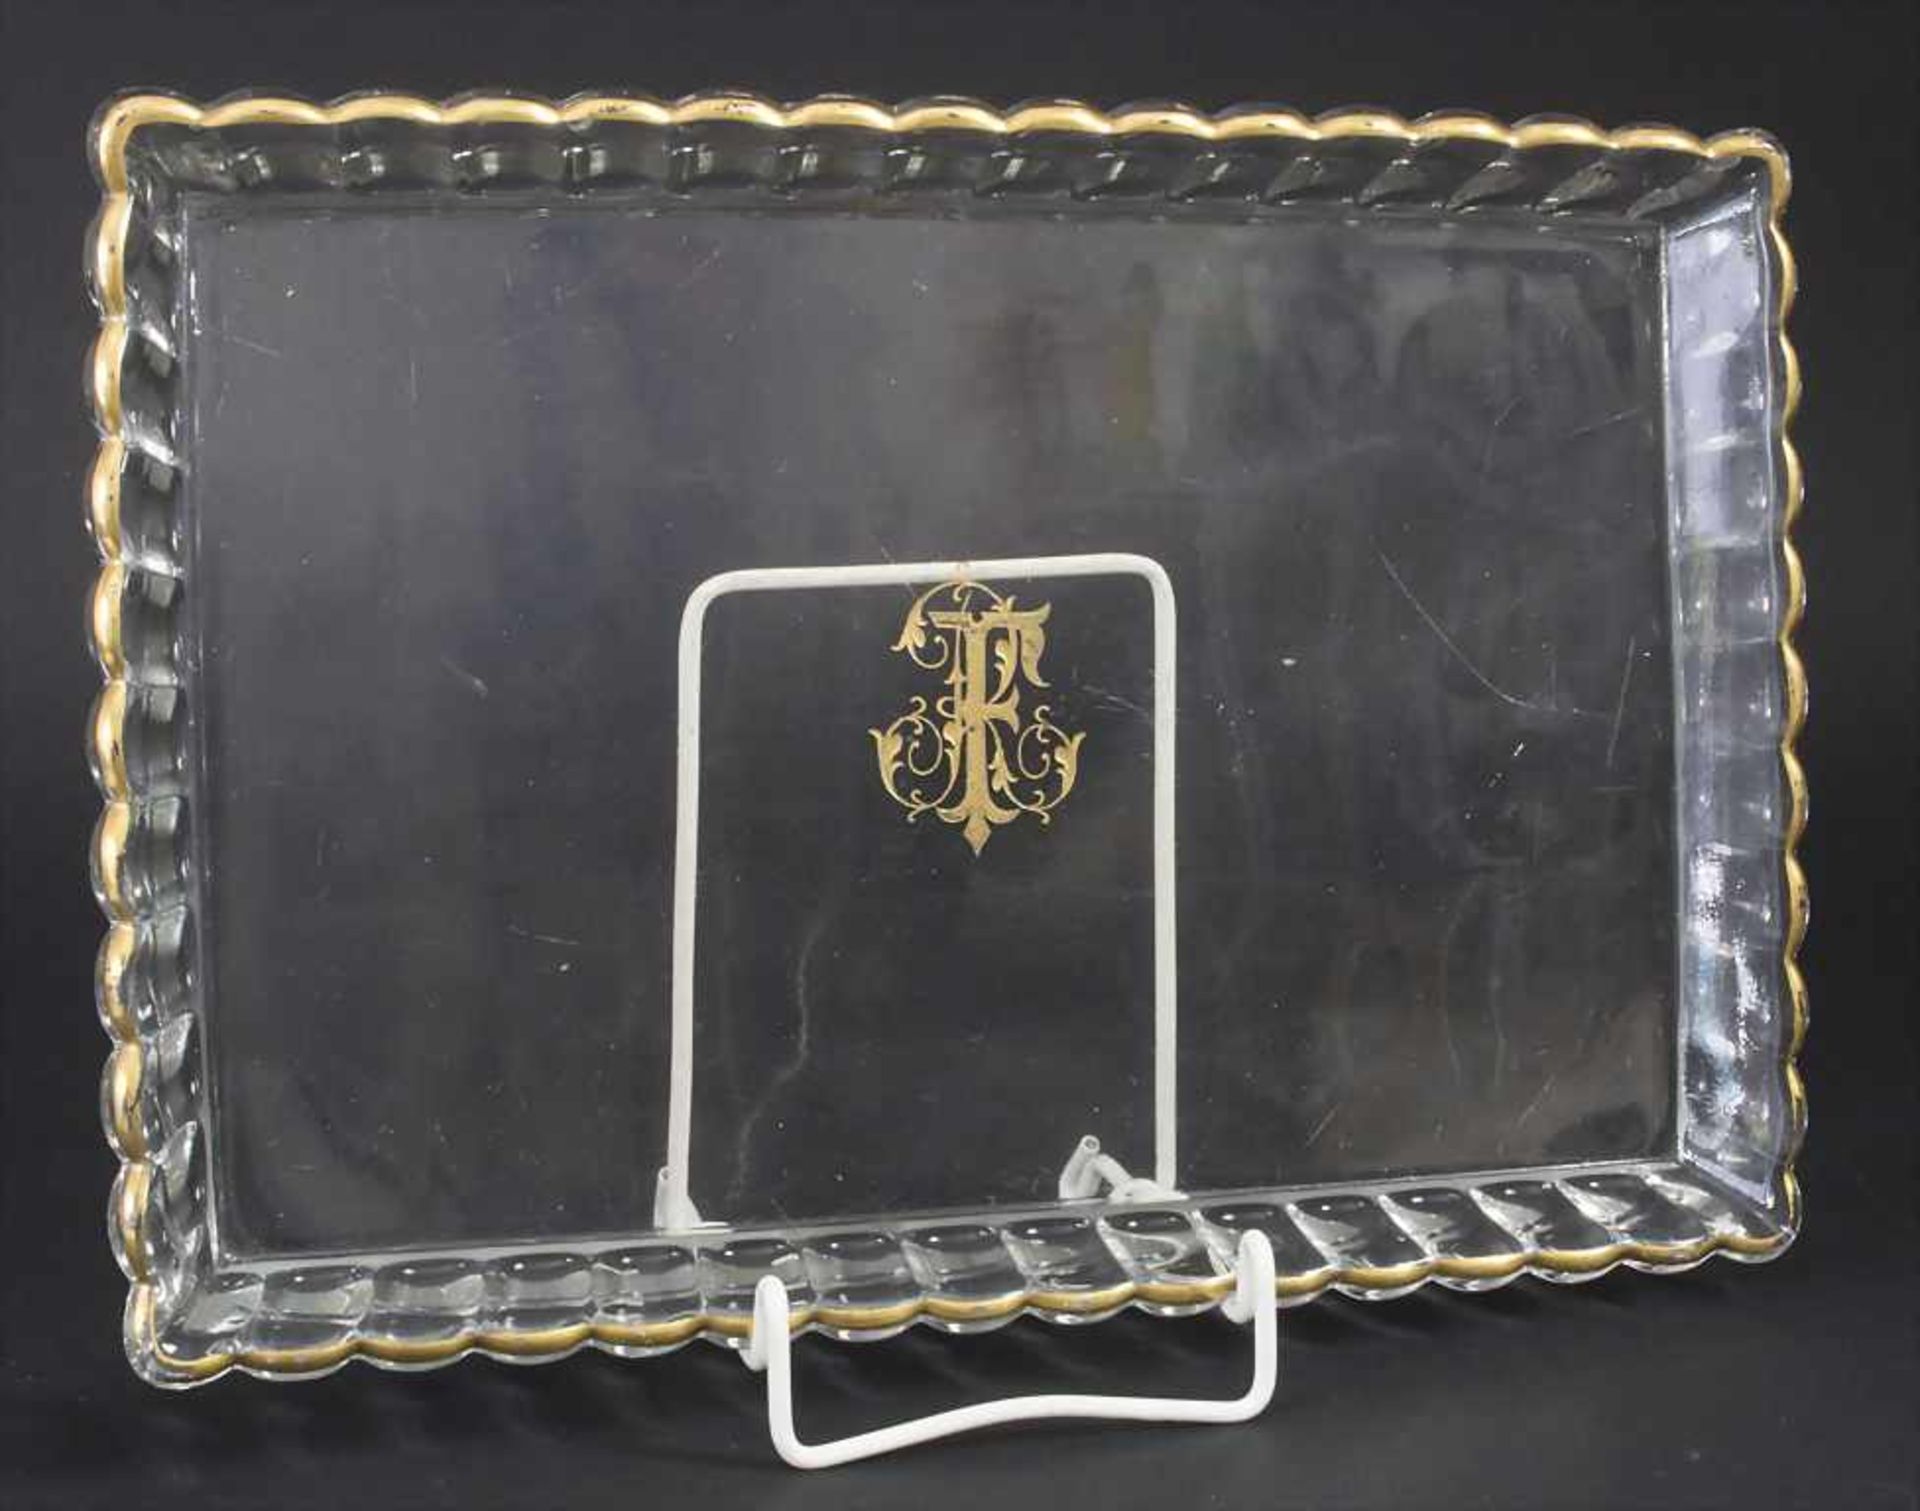 Rechteckiges Glastablett / A rectangular crystal glass tray, Cristallérie de Baccarat, Nancy, E